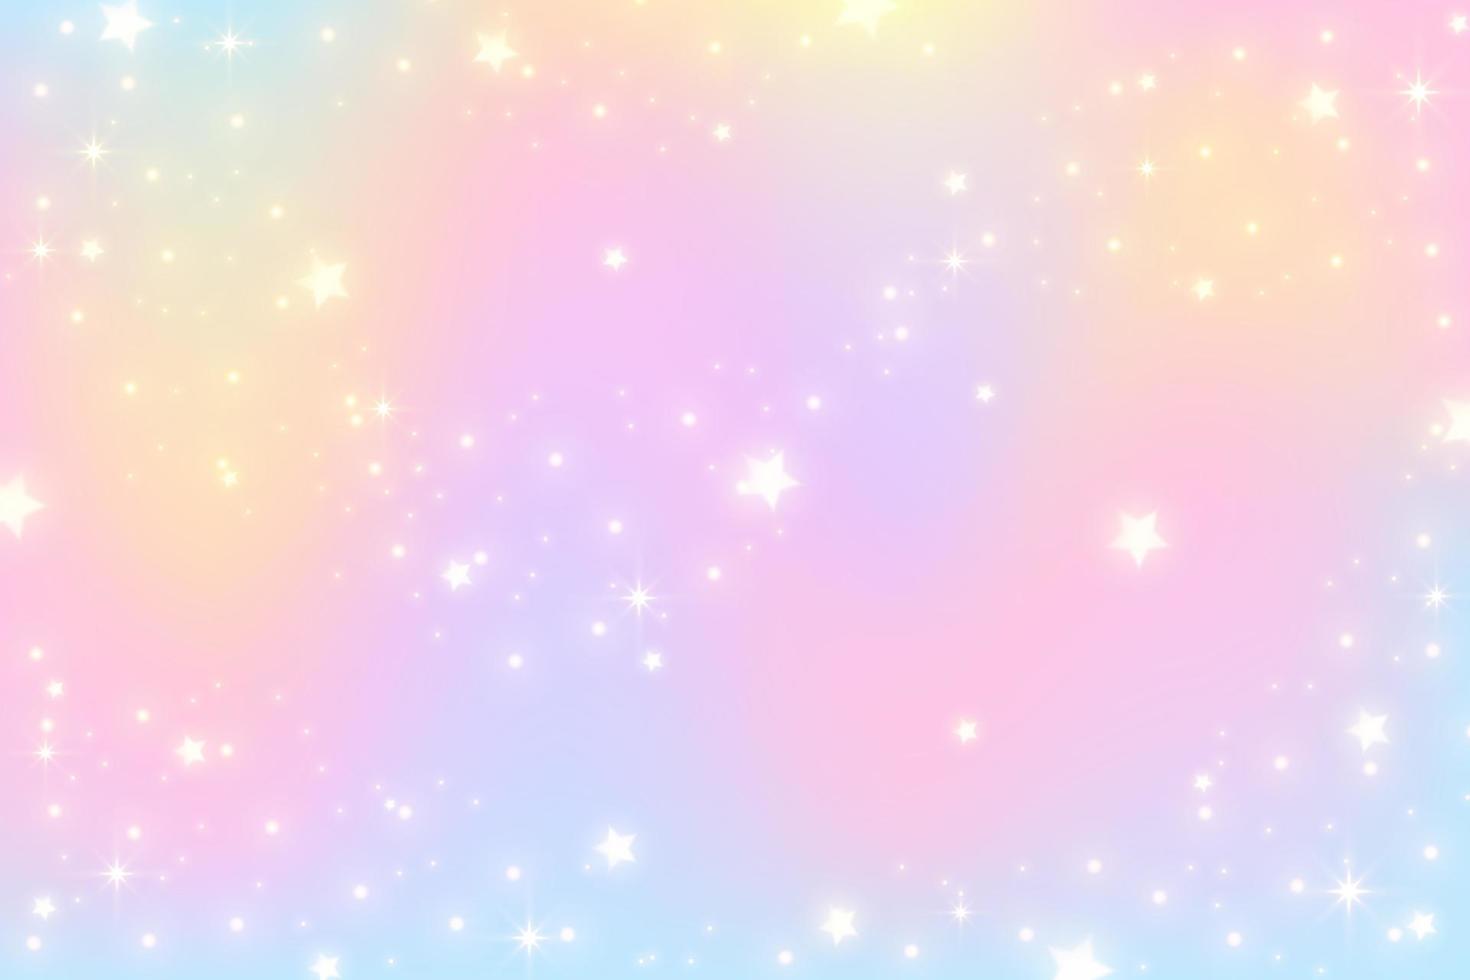 fundo de unicórnio arco-íris. céu de cor gradiente pastel com glitter. espaço mágico da galáxia e estrelas. padrão abstrato de vetor. vetor